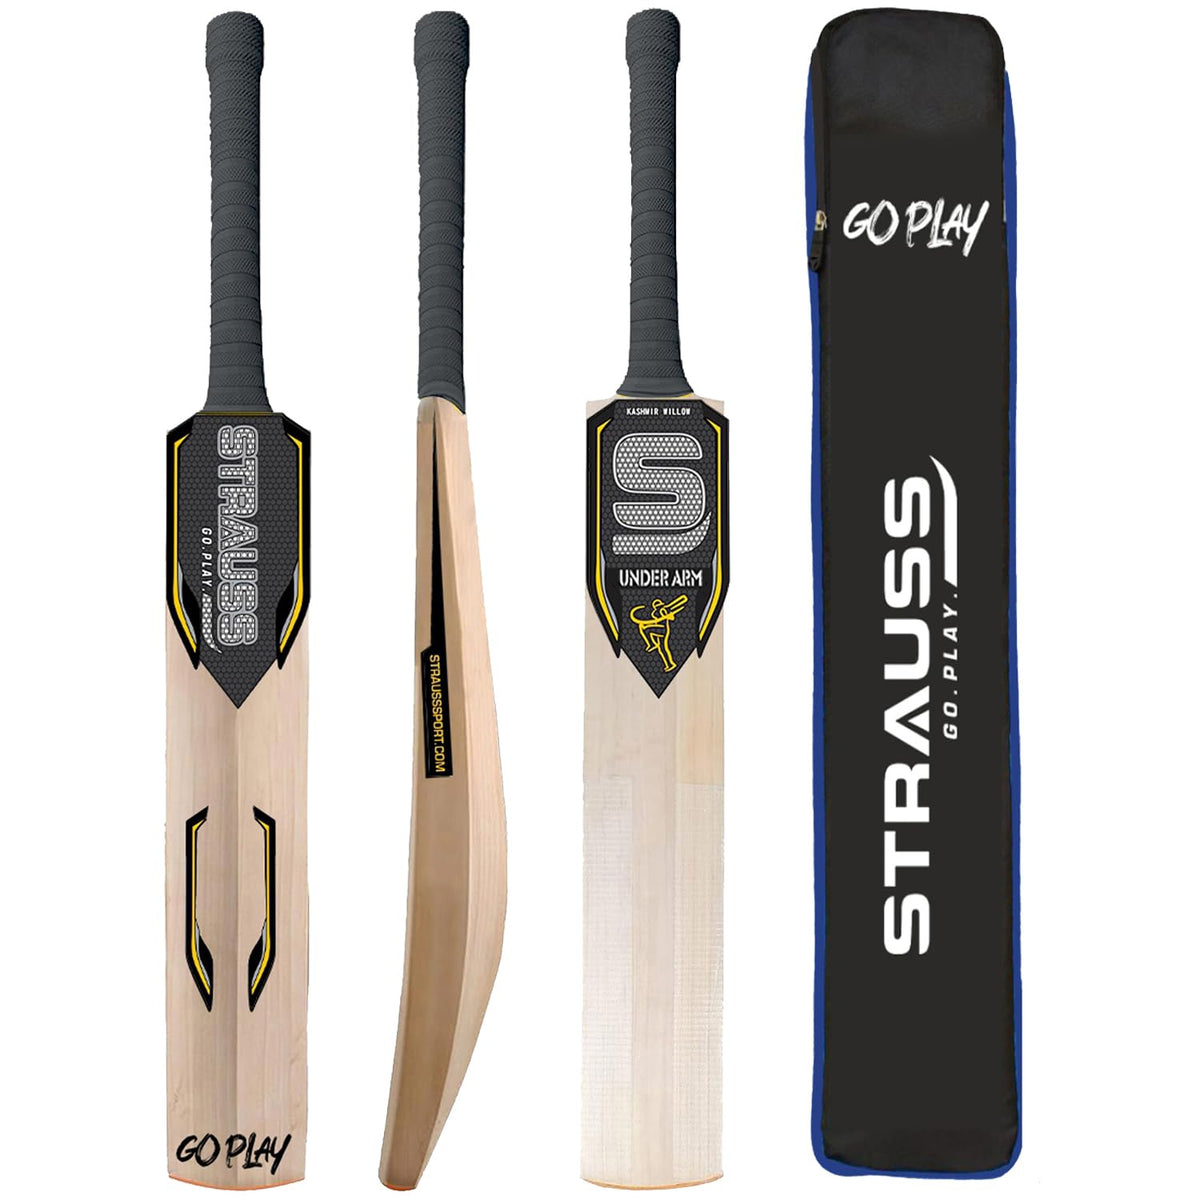 Strauss Underarm Cricket Bat | Kashmir Willow | Cricket Bat with Grip for Gully Cricket & Tournament Match | Standard Tennis Ball Bat for Cricket | Size: Short Handle (1150-1250 Grams)